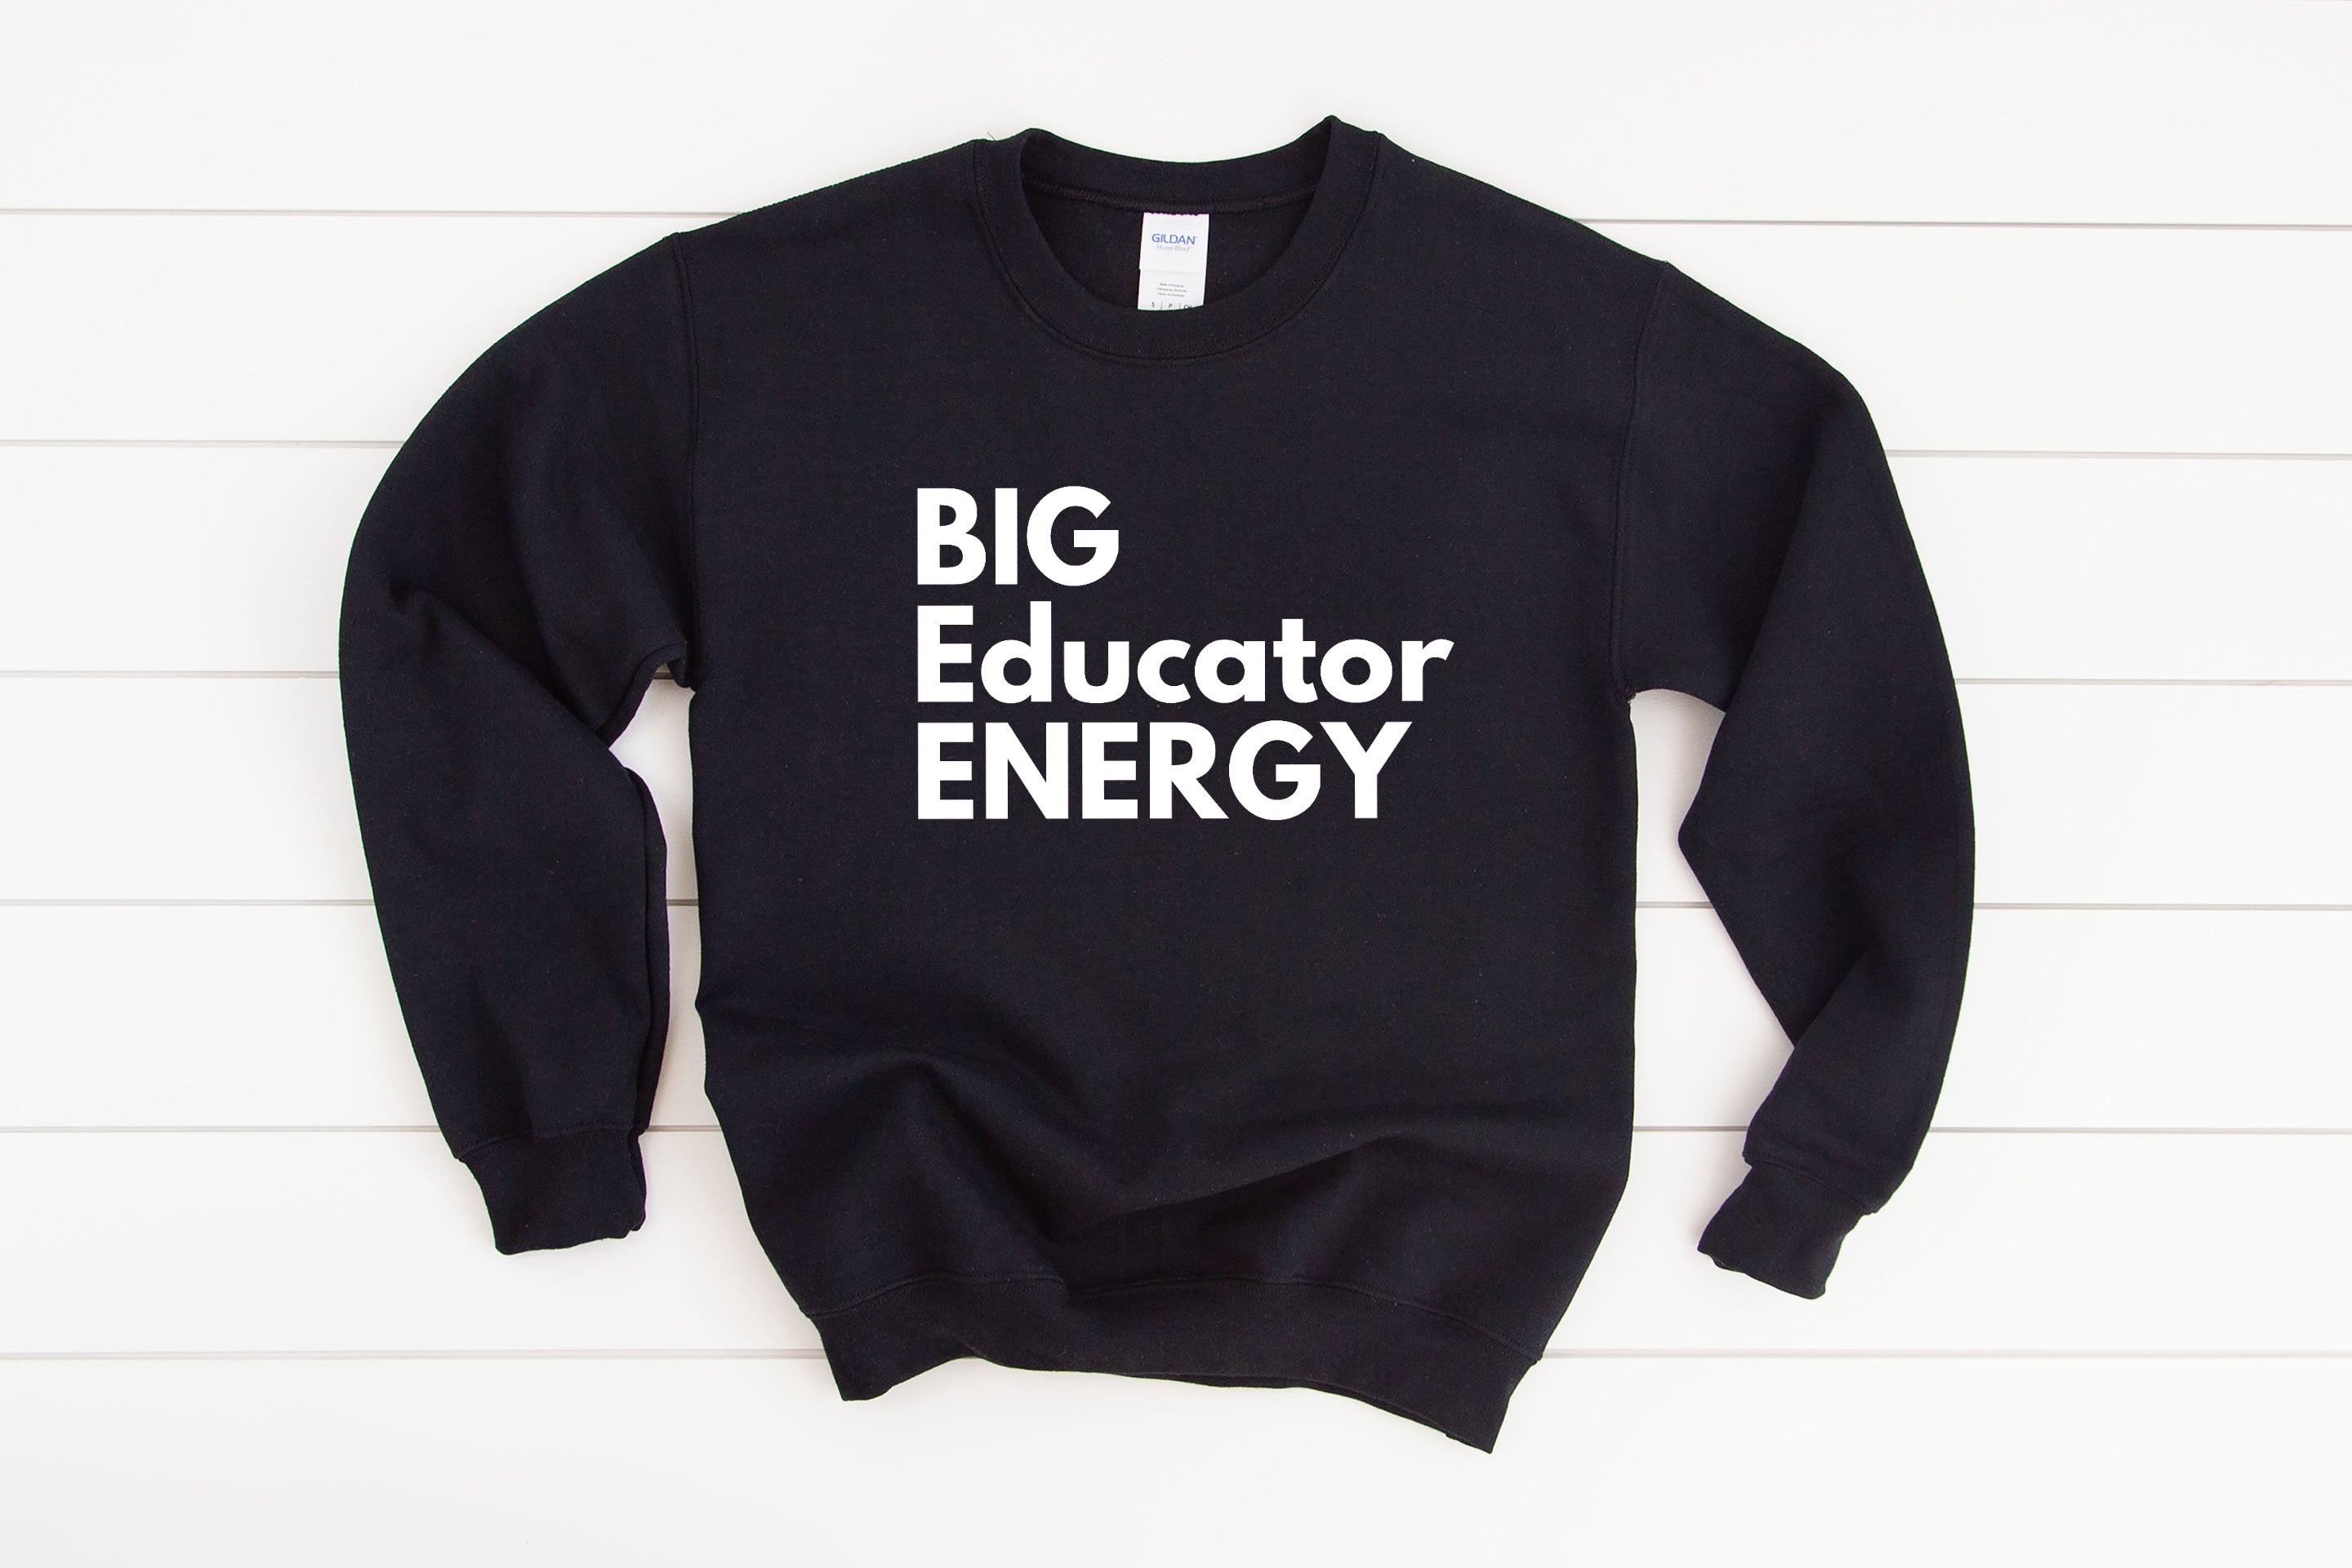 Big Educator Energy Sweatshirt